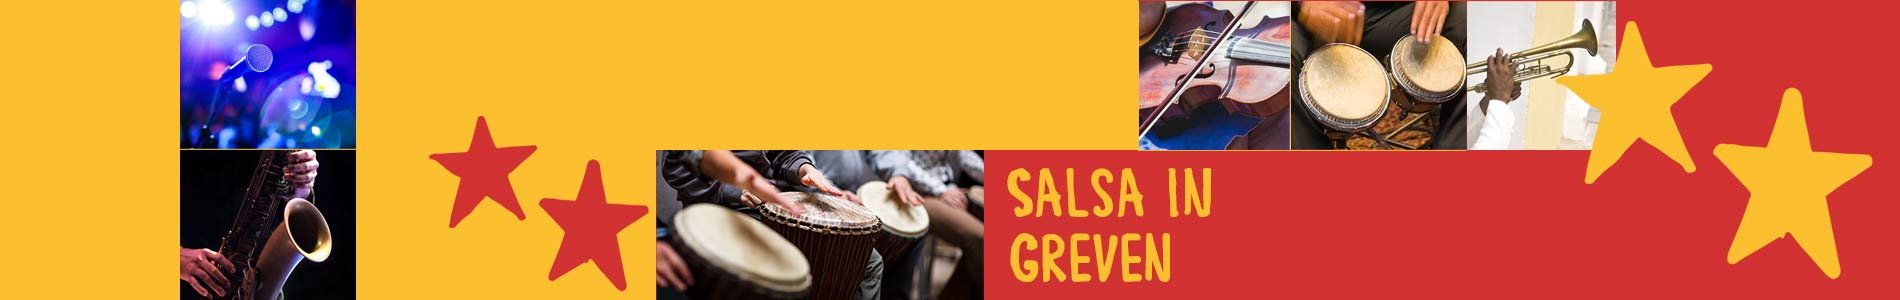 Salsa in Greven – Salsa lernen und tanzen, Tanzkurse, Partys, Veranstaltungen